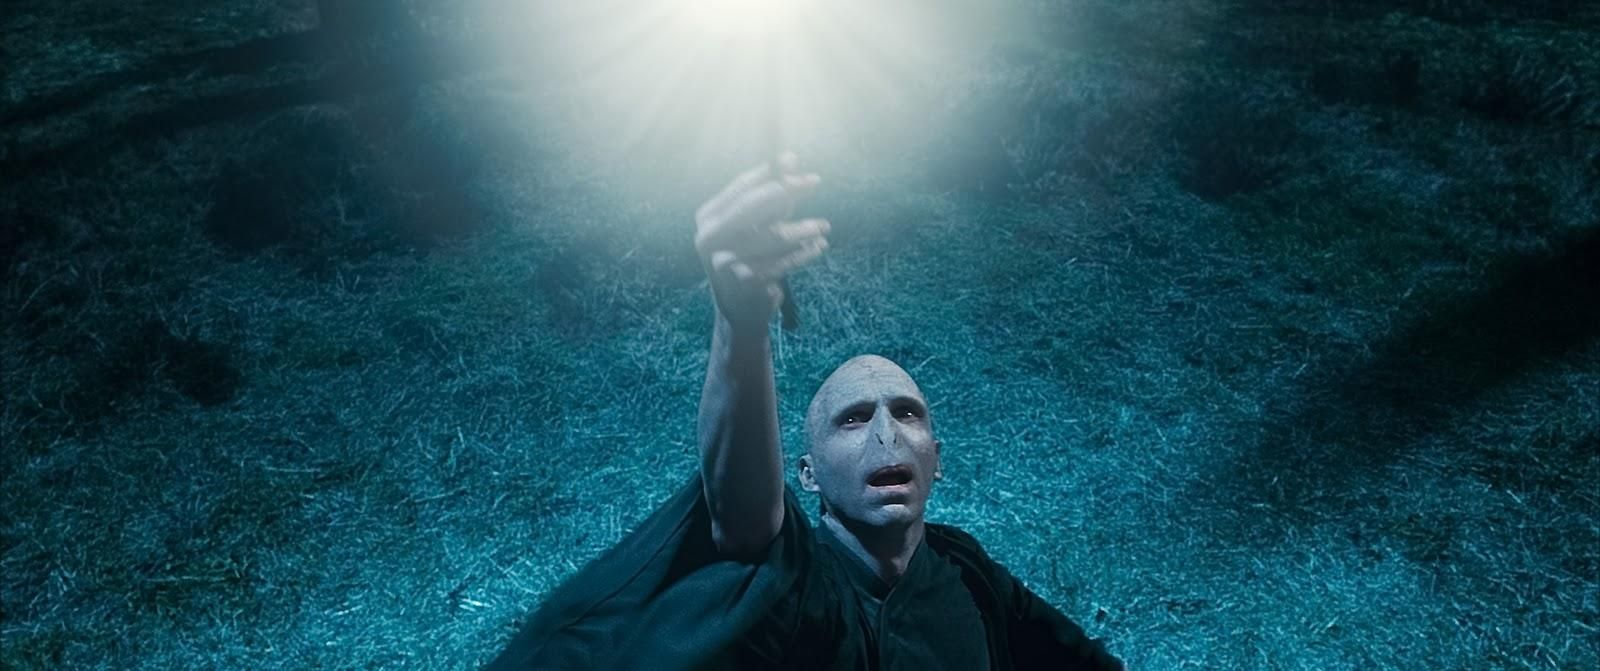 Predstaviteľ Voldemorta by si úlohu temného čarodejníka veľmi rád zopakoval